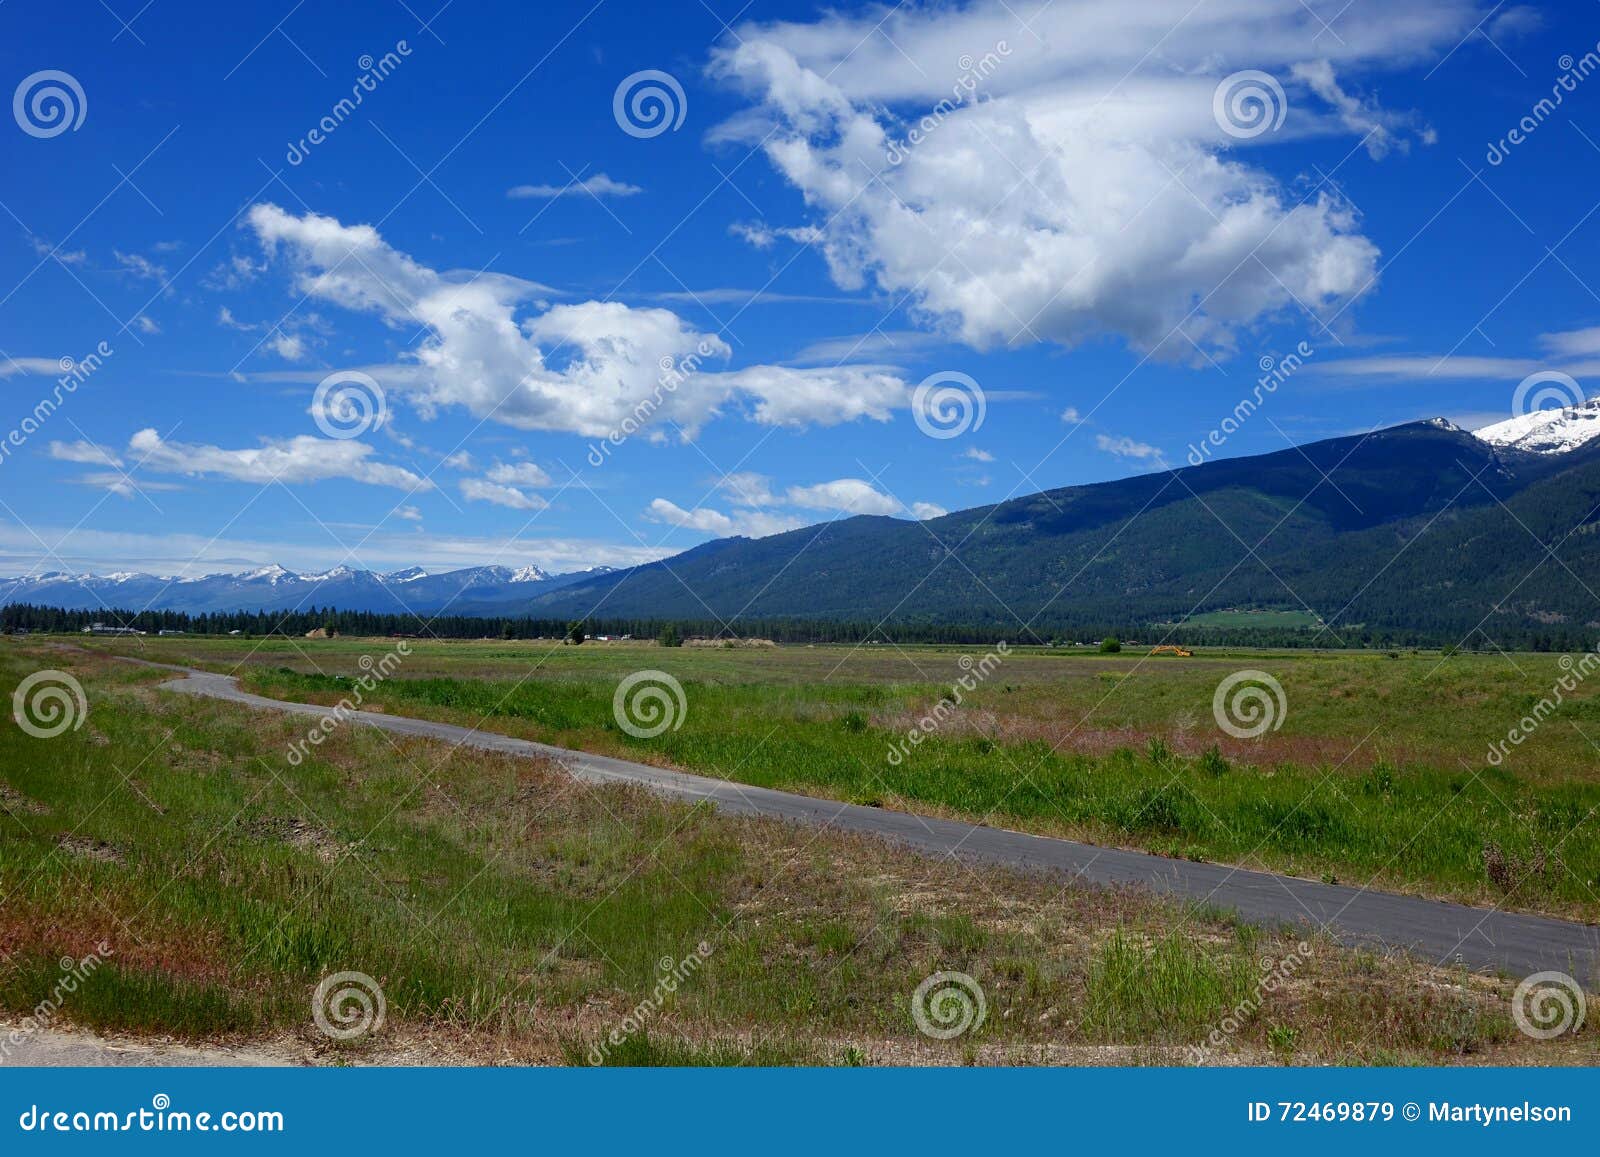 bitterroot mountain valley - montana